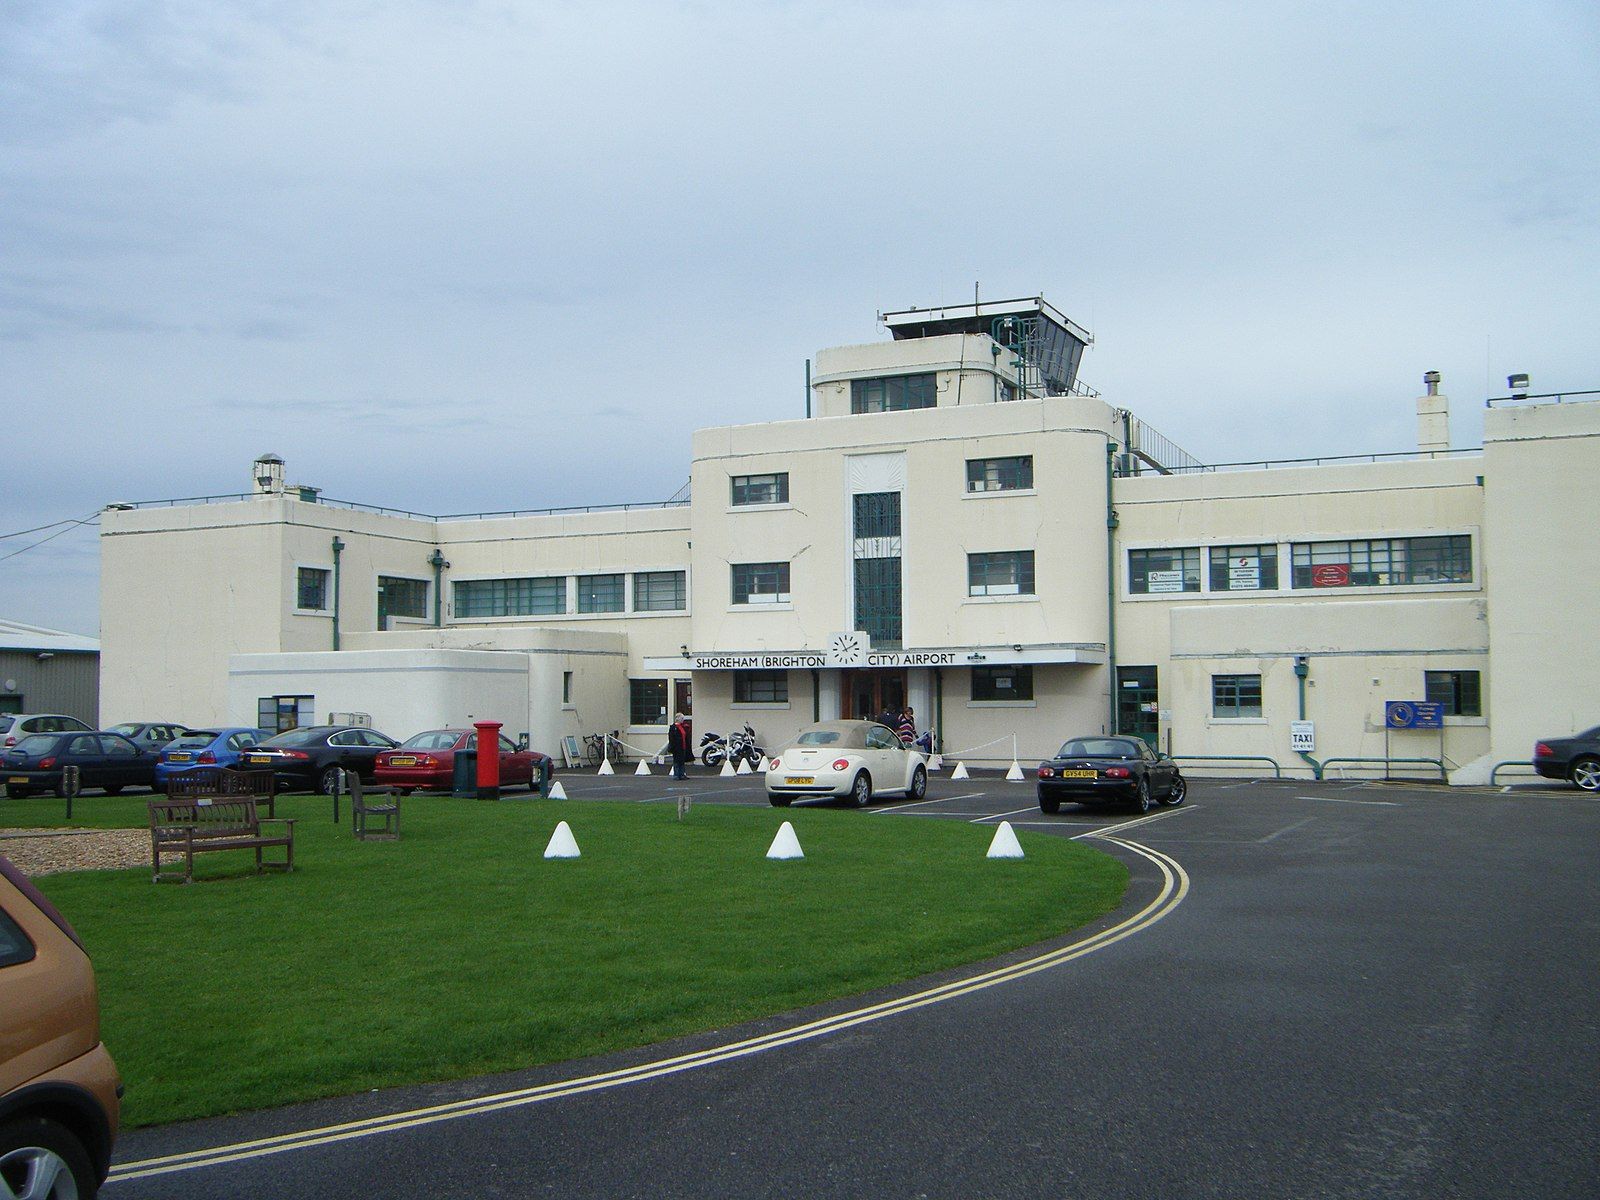 Shoreham terminal